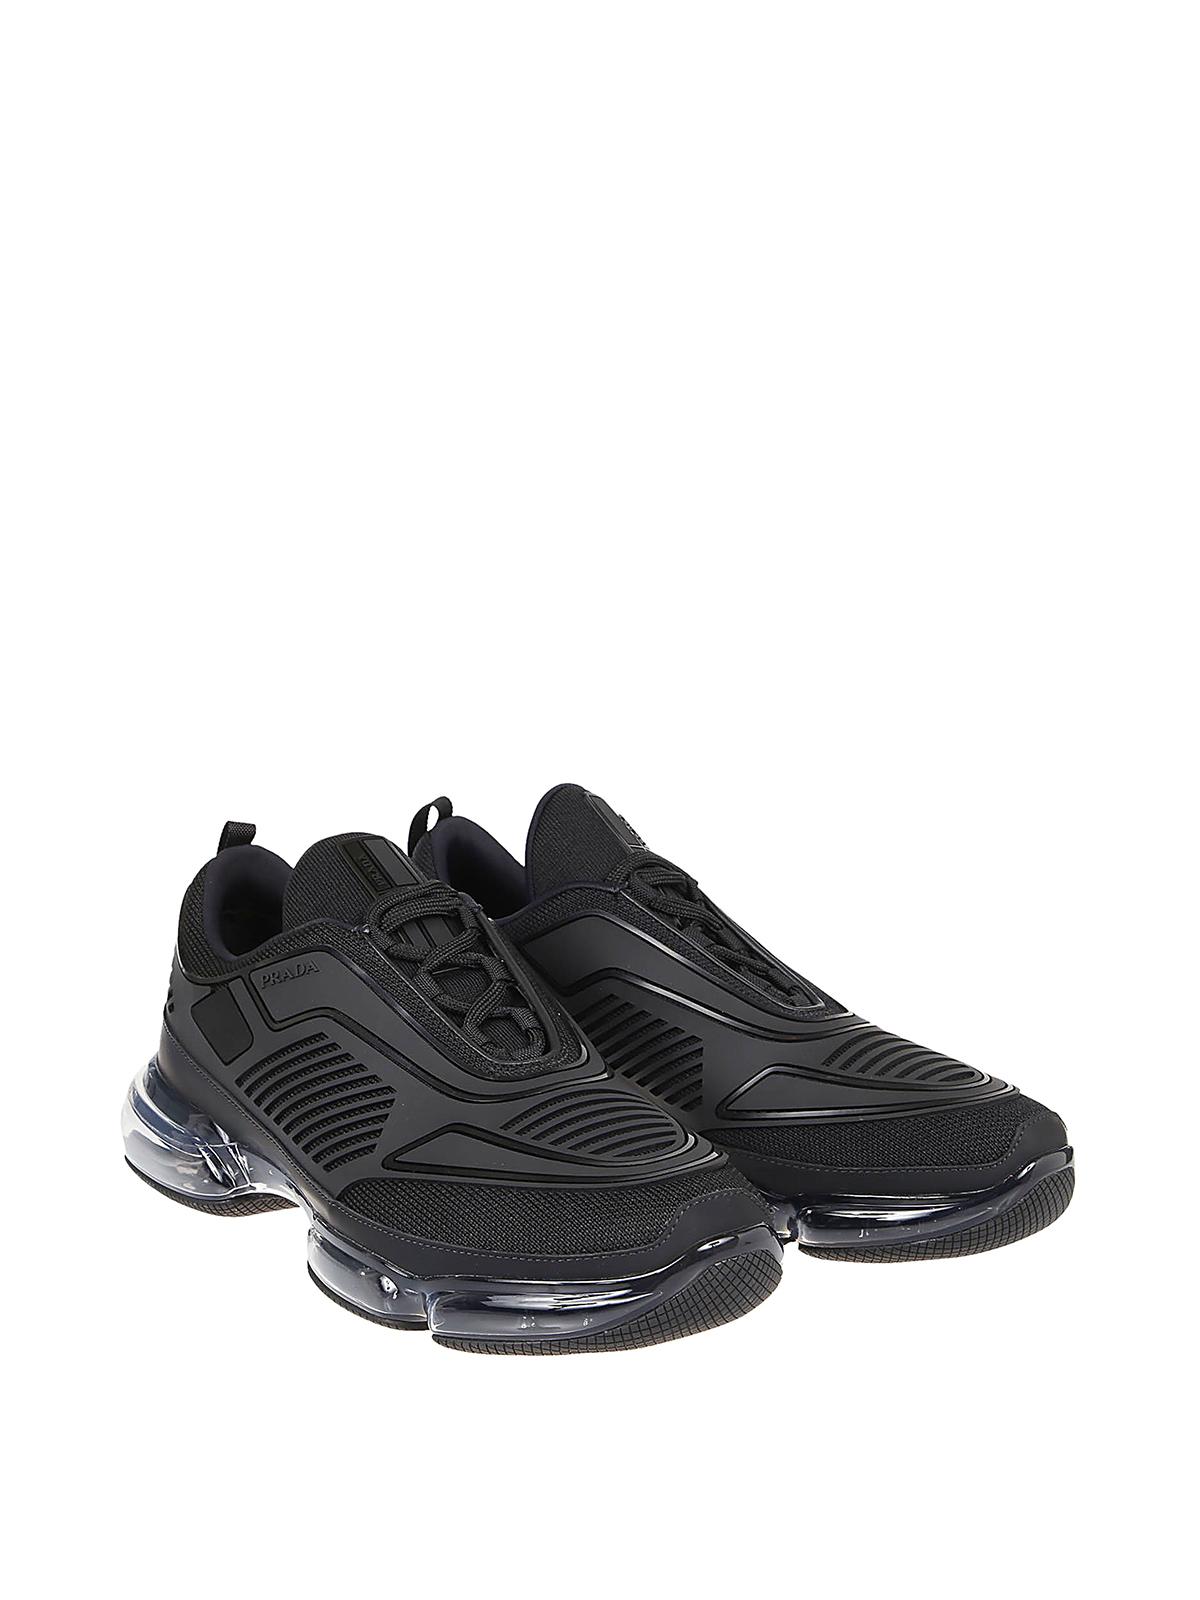 Prada Rubber Cloudbust Air Sneakers in Black for Men - Lyst